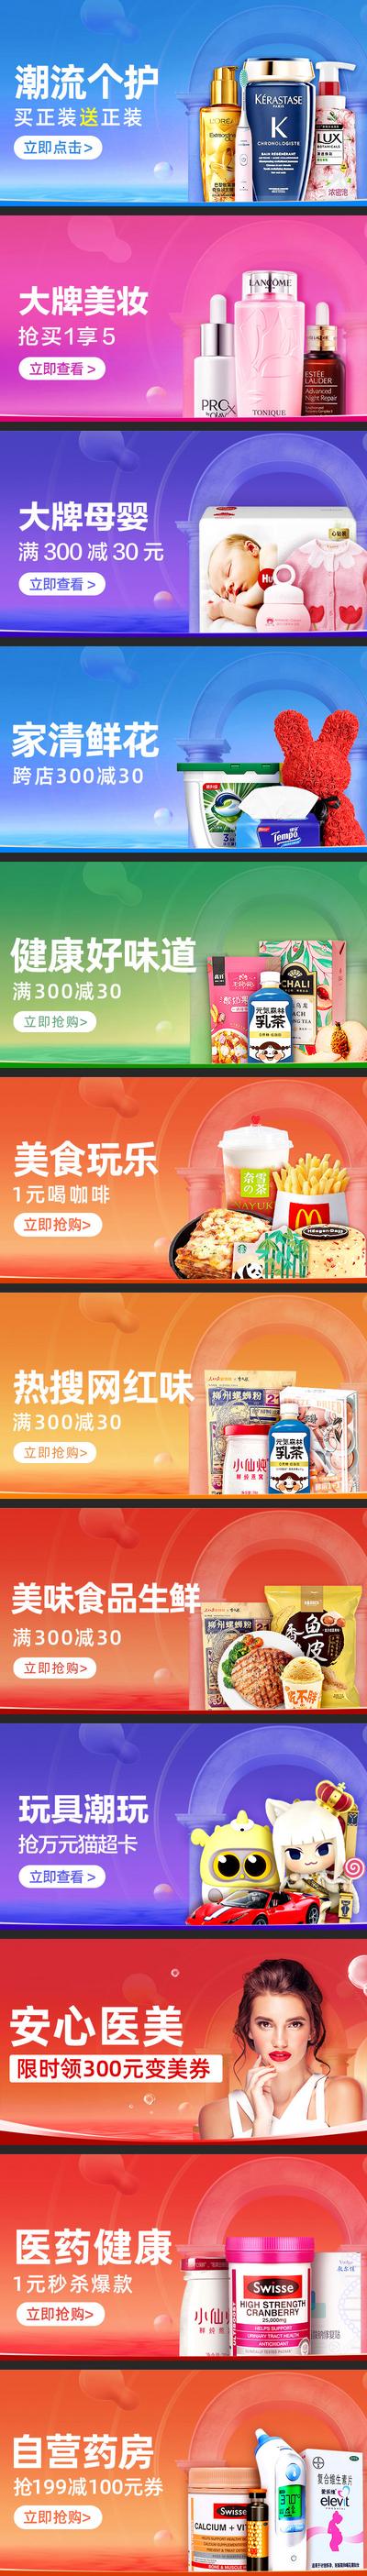 南门网 电商海报 淘宝海报 banner 食品百货 美妆 孕婴用品 医药健康